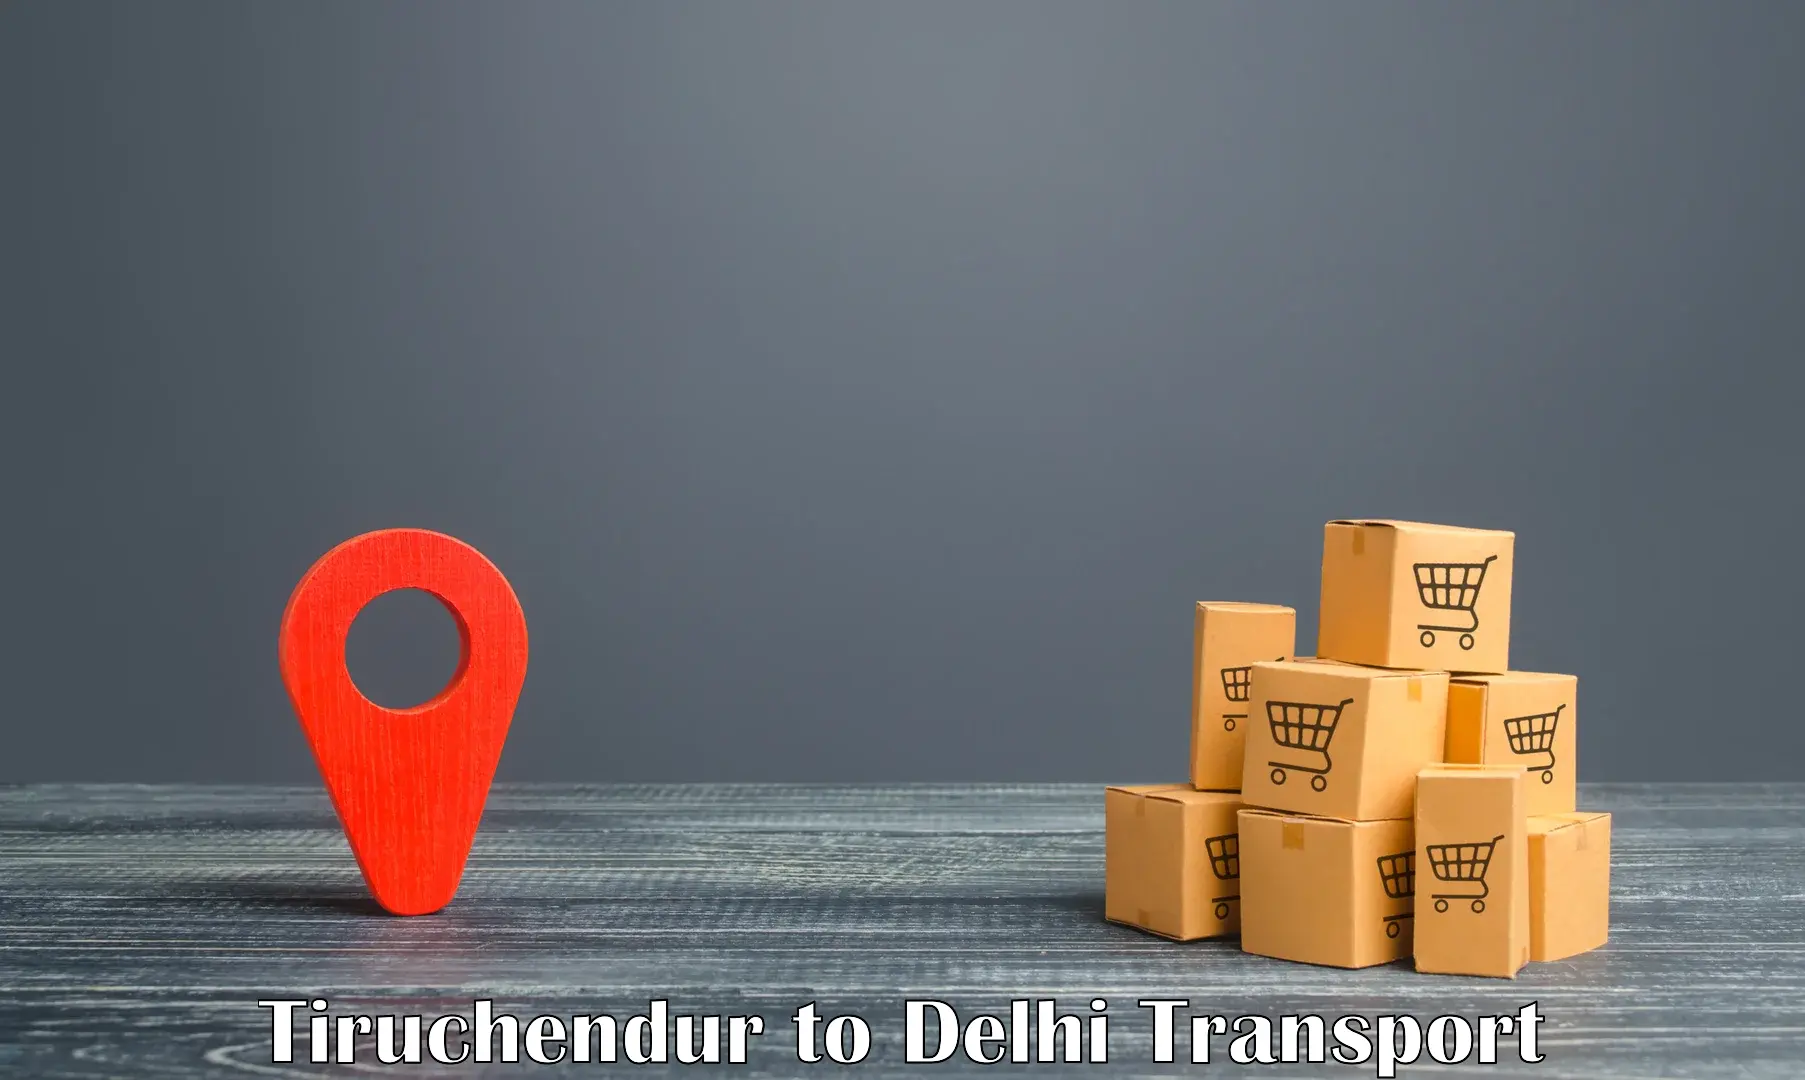 Furniture transport service Tiruchendur to Delhi